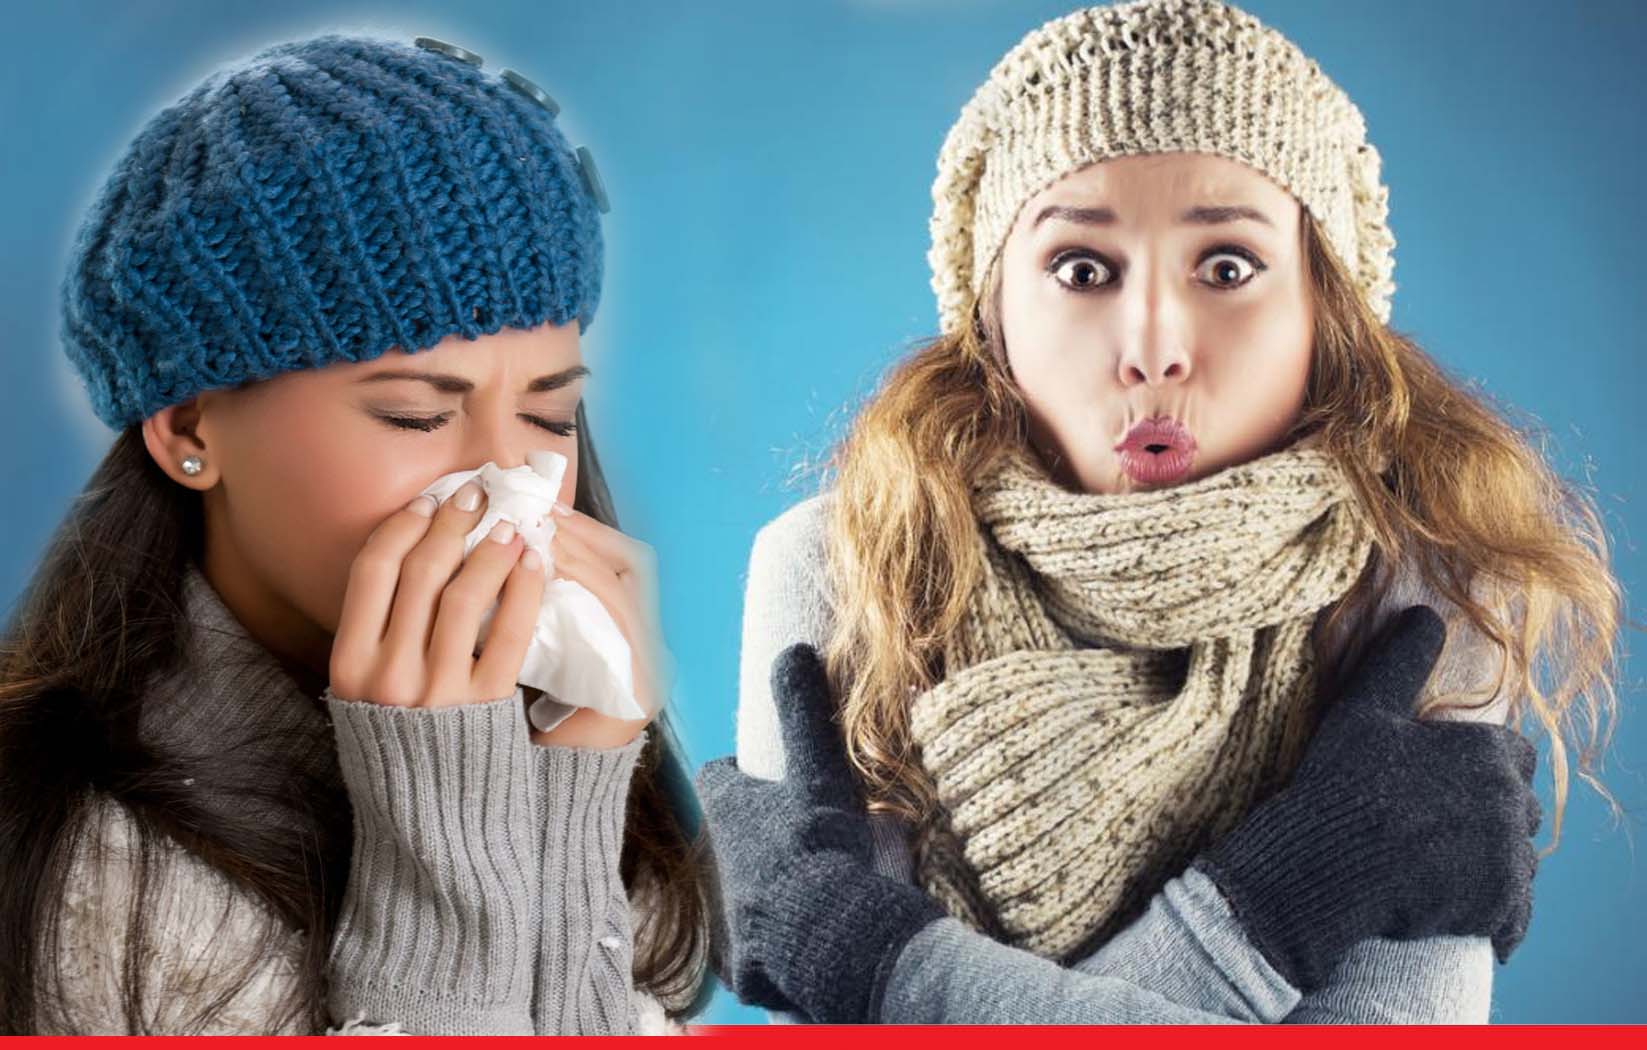 अगर आपको भी लगती है बहुत ठंड, तो इन बीमारियों के हैं संकेत